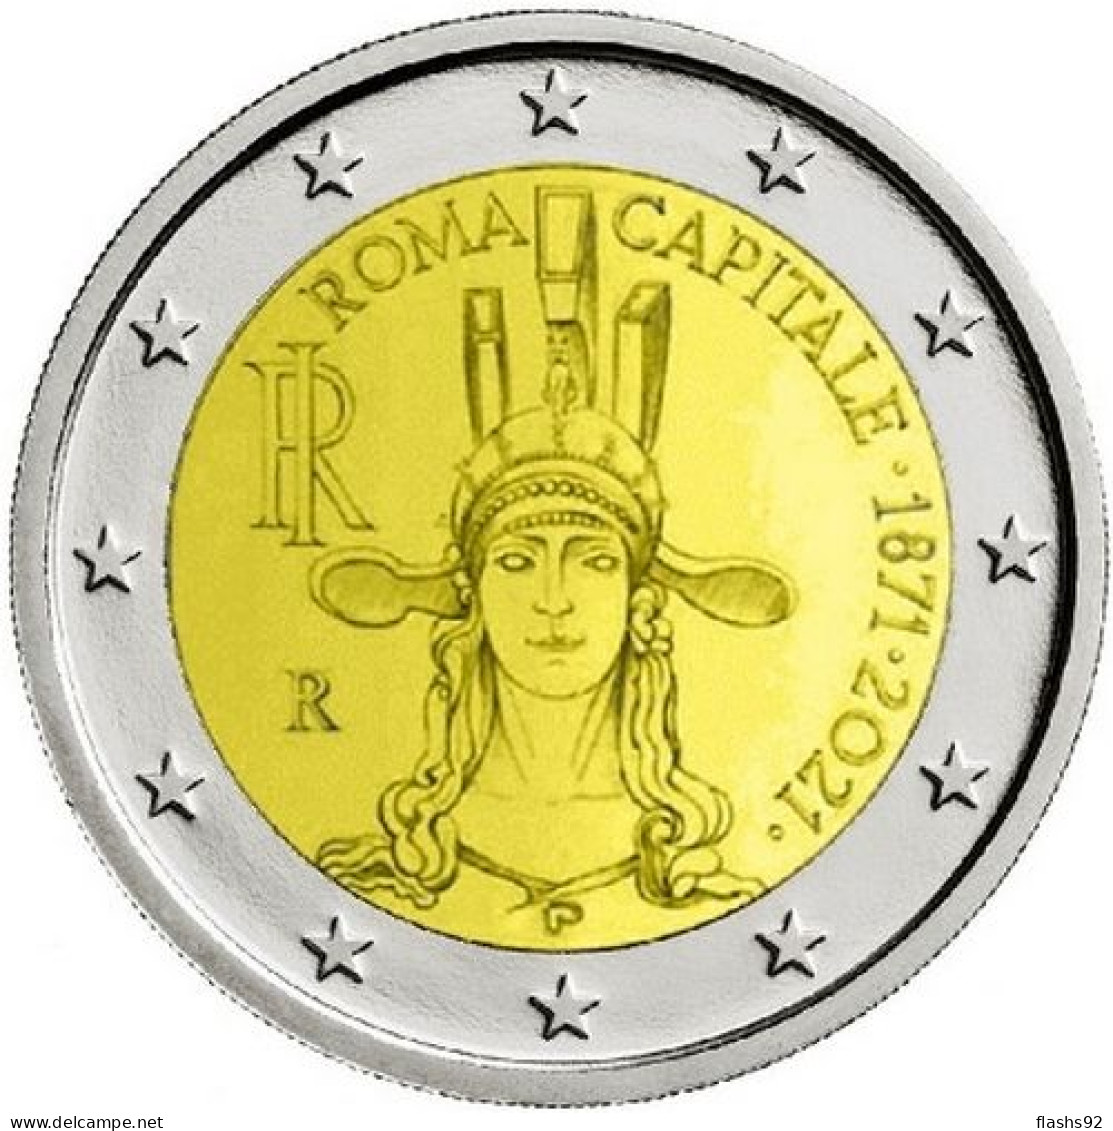 2 Euro Commemorative Italie 2021 Rome 150 Ans De La Fondation De Rome UNC - Italia